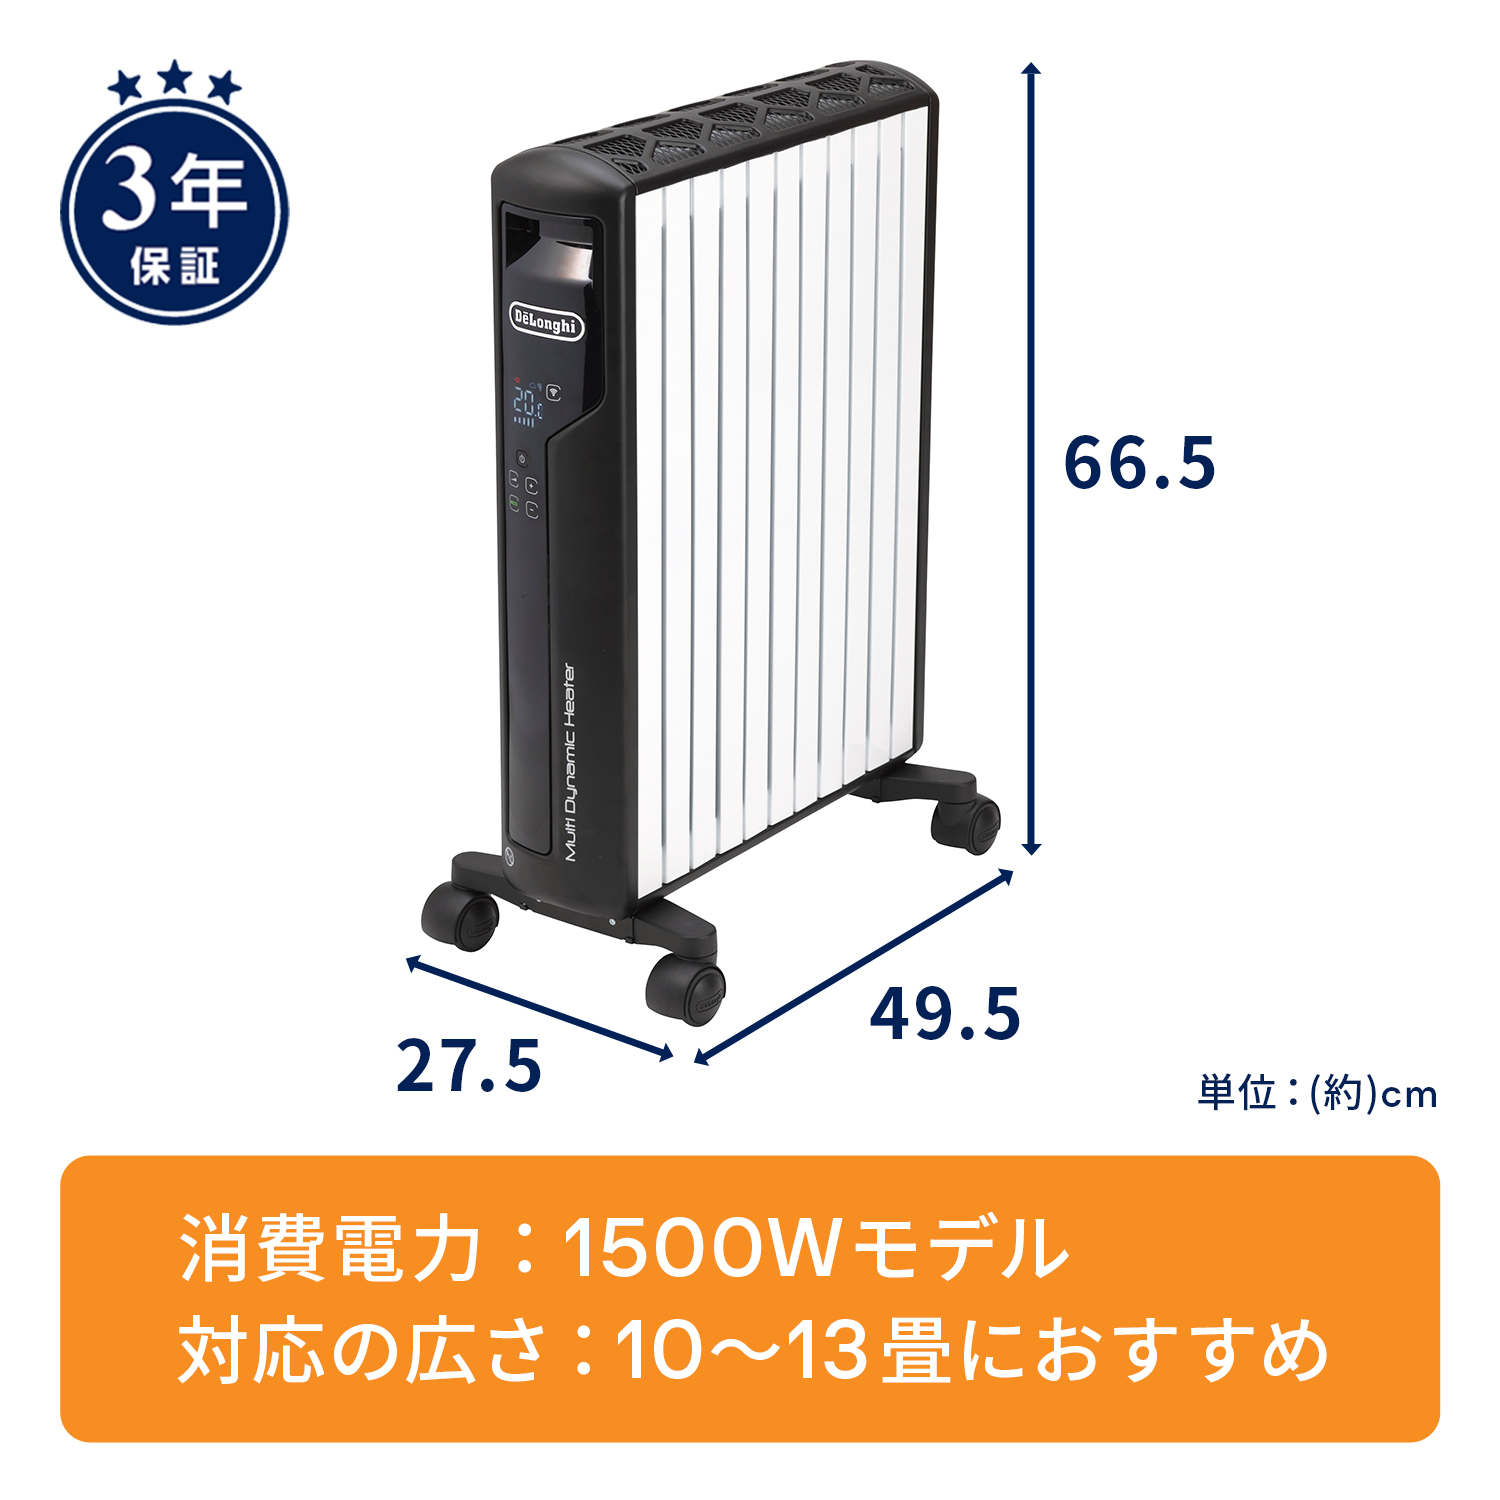 デロンギ マルチダイナミックヒーター Wi-Fiモデル MDHAA15WIFI-BK |ゼロ風暖房 デロンギ